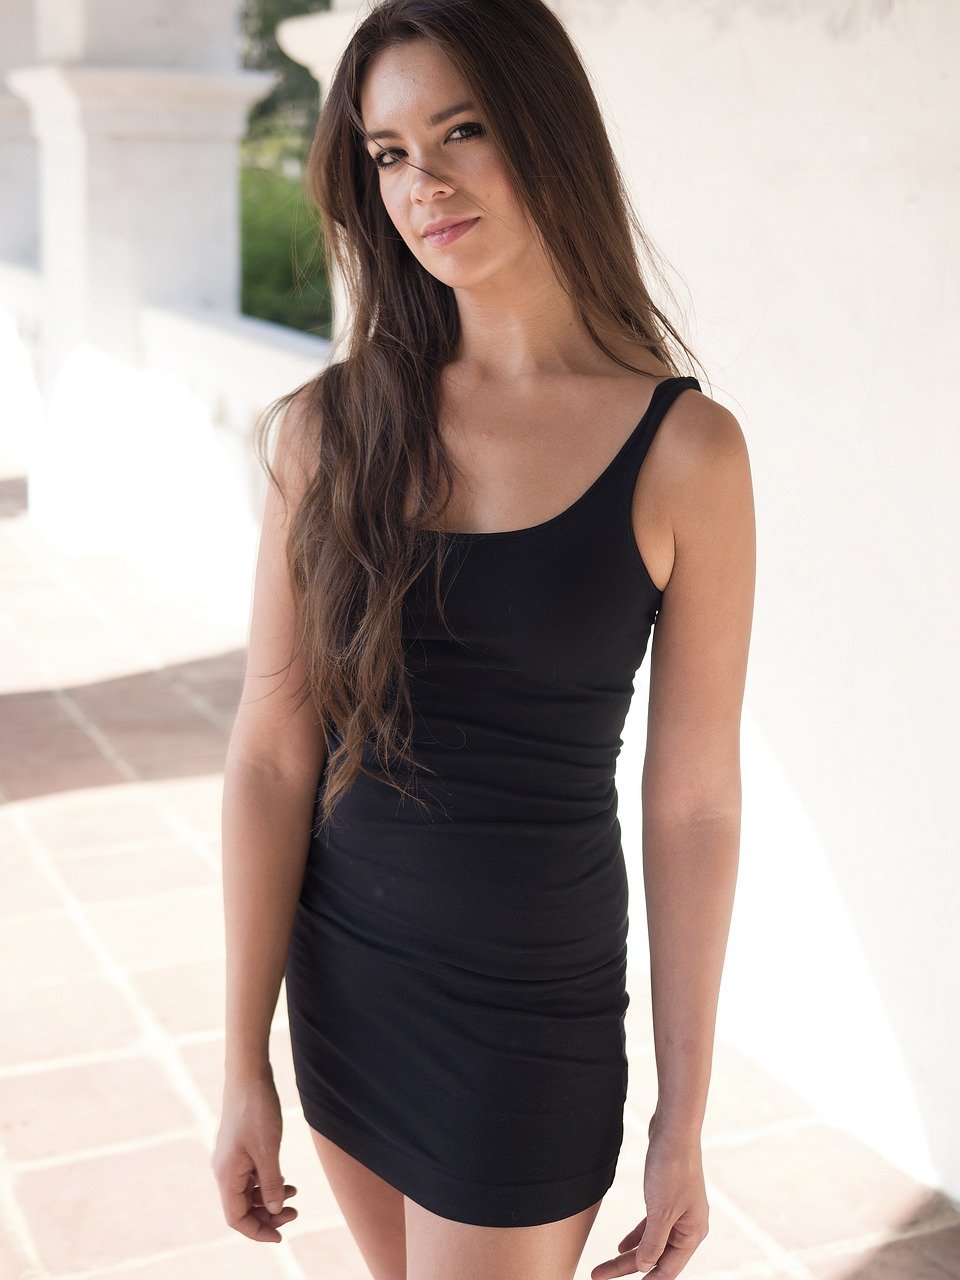 girl, woman, black dress-1293931.jpg